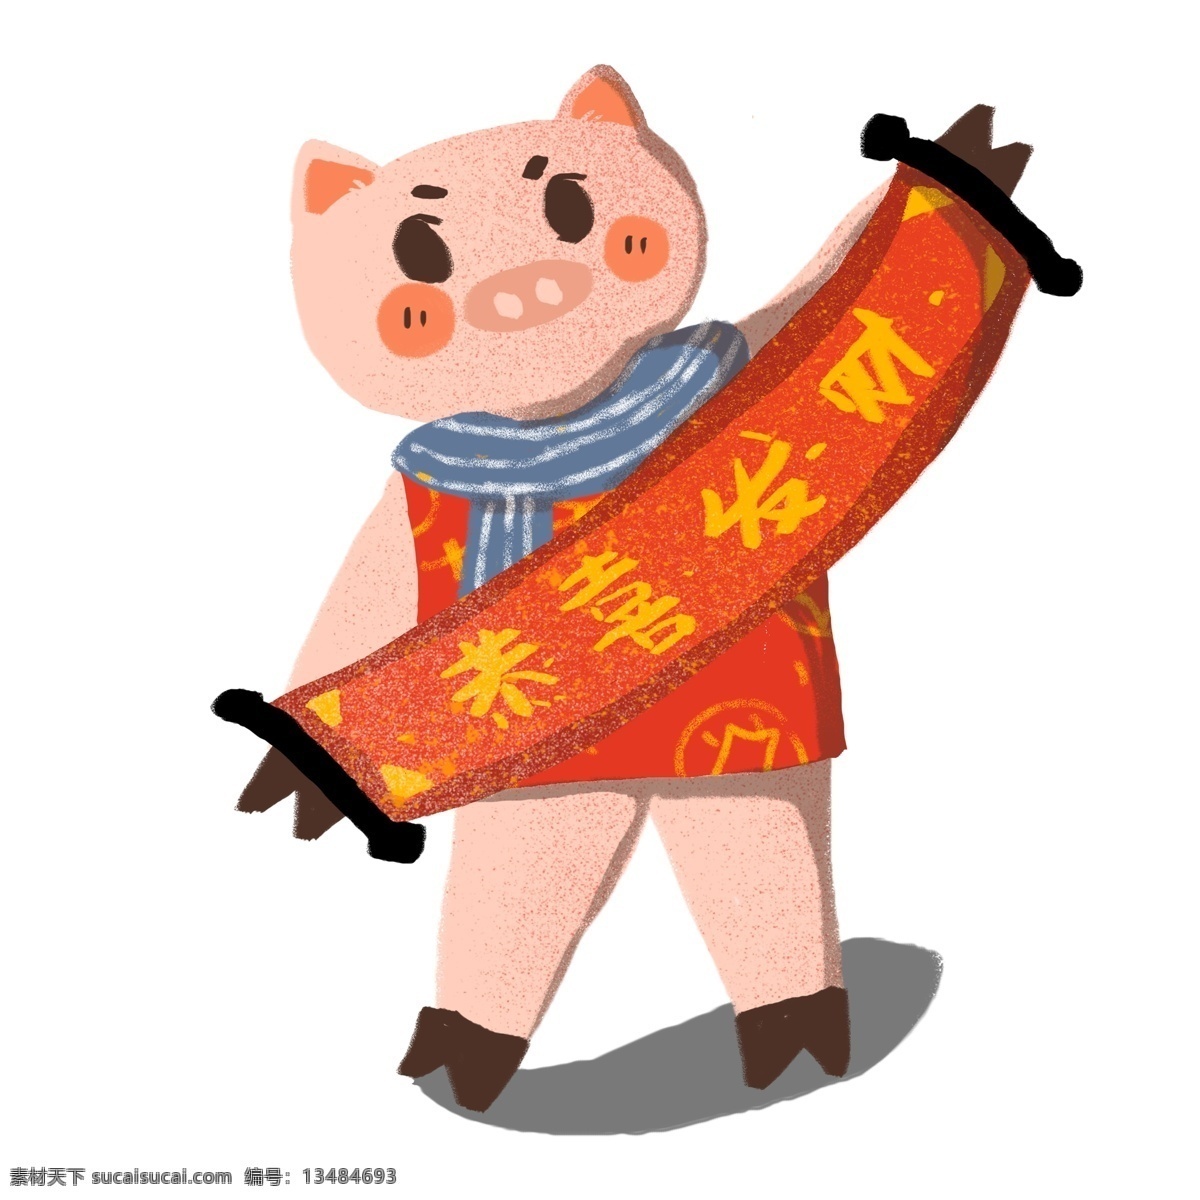 复古 手绘 恭喜发财 猪年 卡通 小 猪 喜庆 对联 春节 插画 小猪 新年 2019年 过年 小猪形象 猪年形象